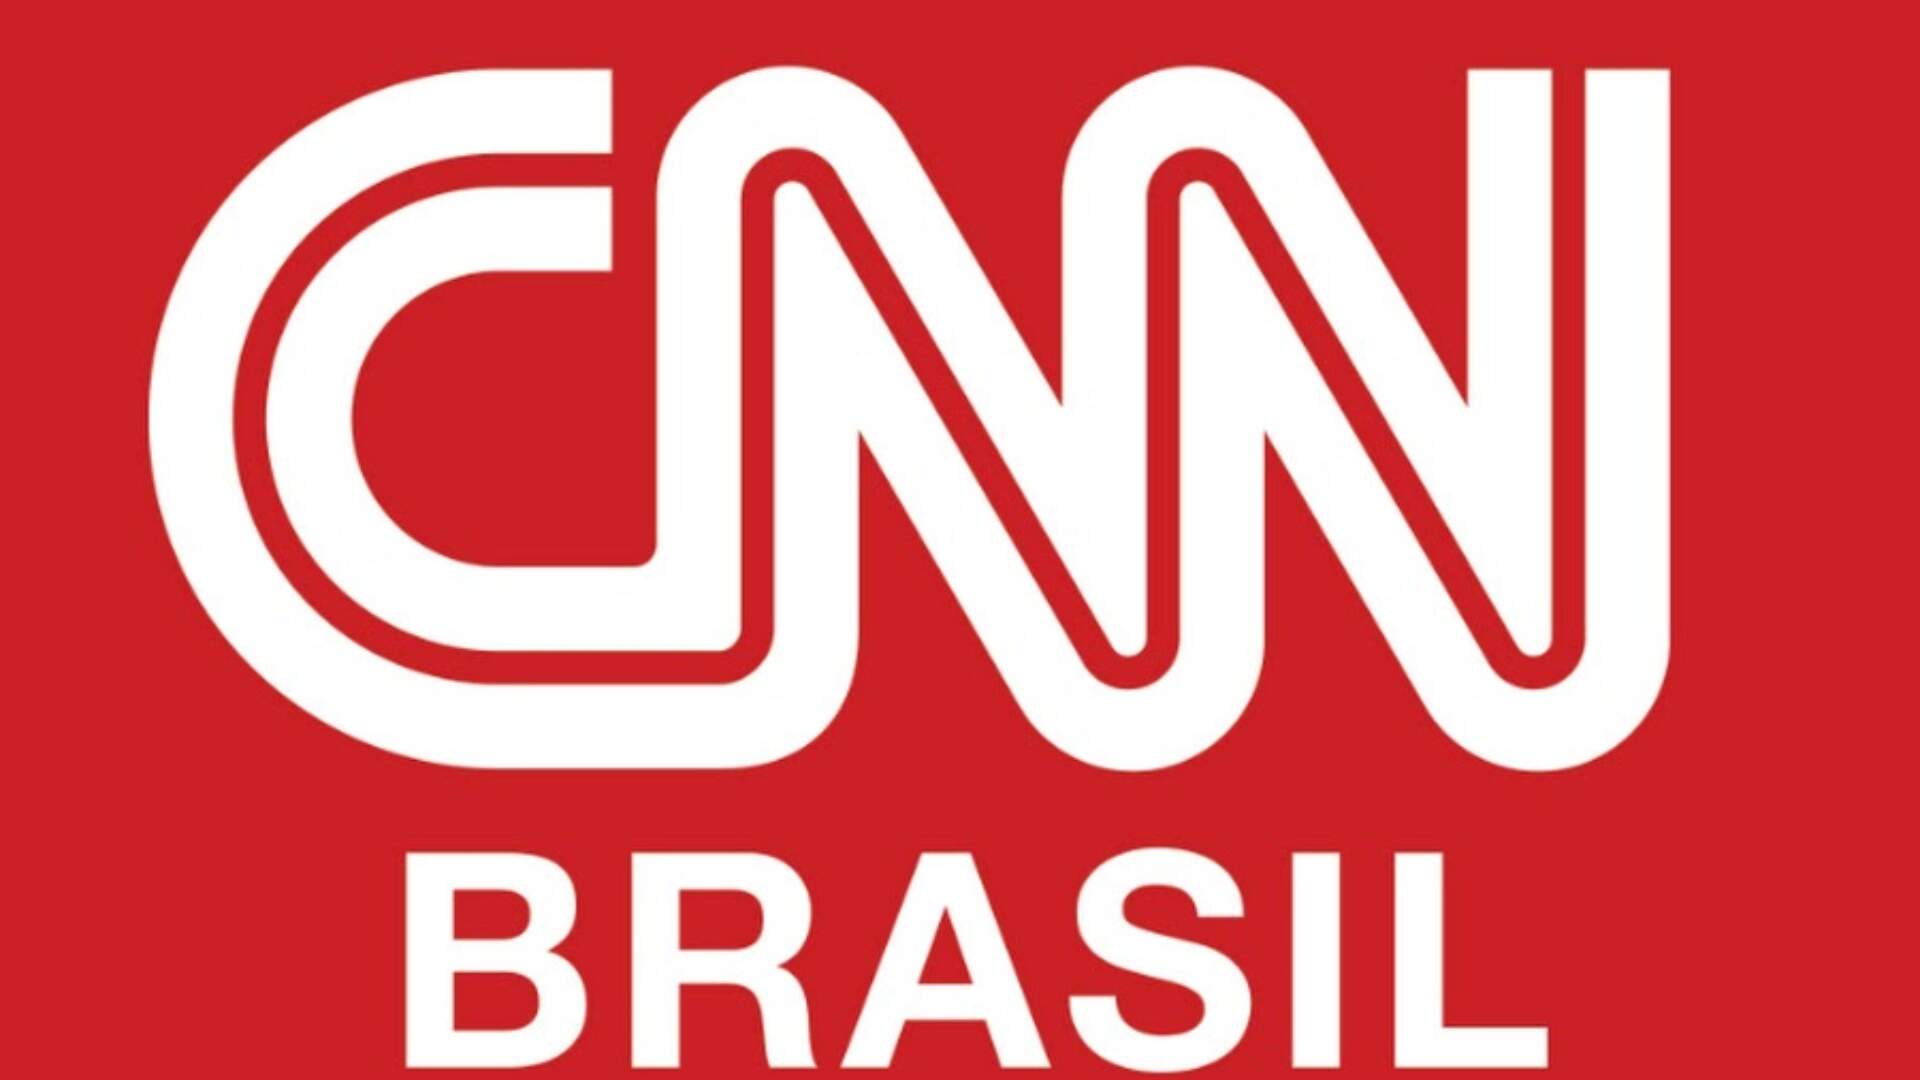 Troca-troca: Após onda de demissões, CNN anuncia novas contratações e mudanças na programação - Metropolitana FM